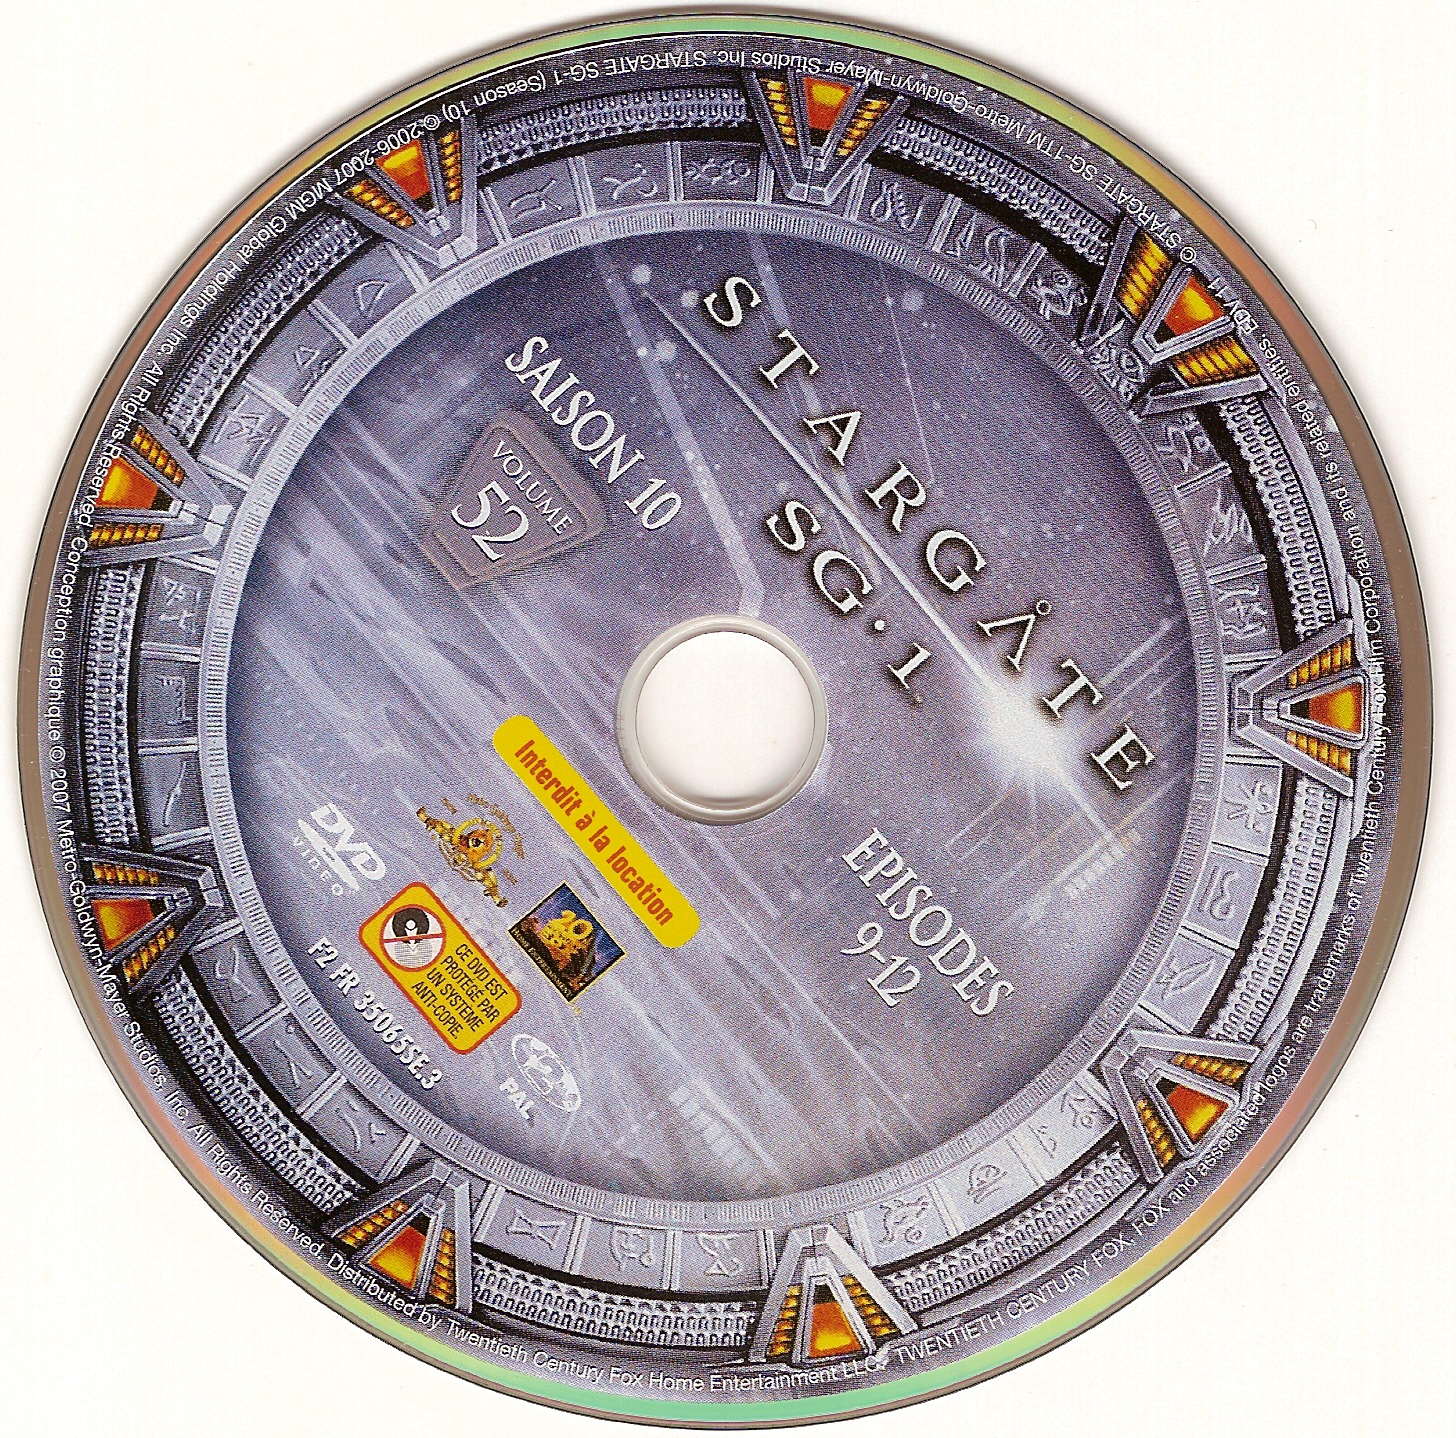 Stargate SG1 vol 52